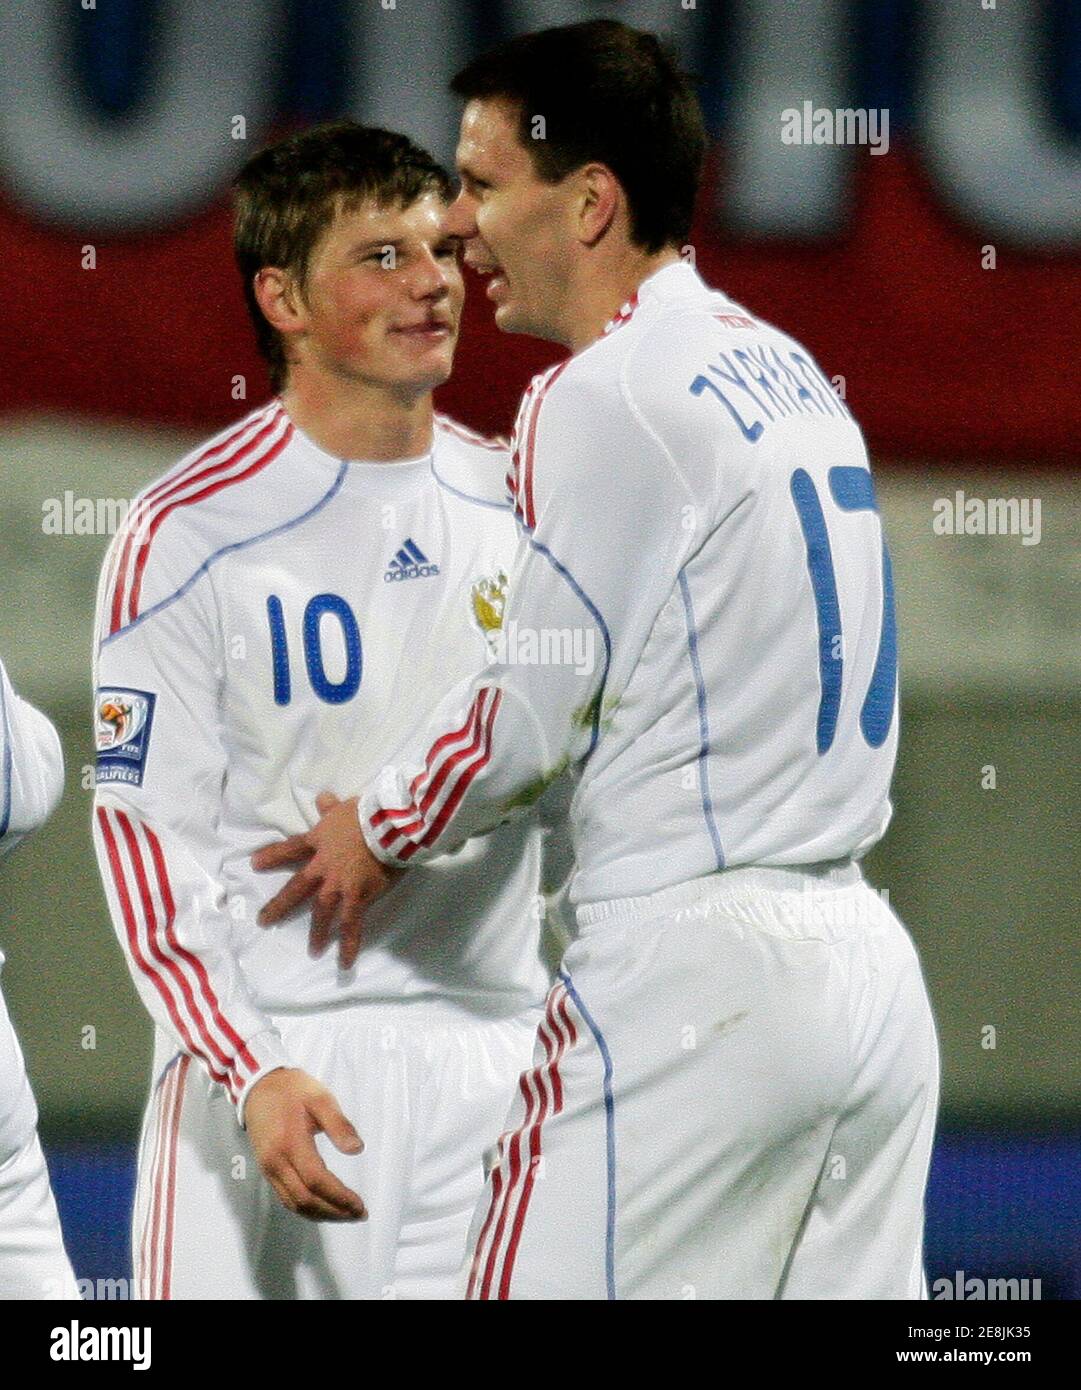 Konstanstin Zyryanov (R) della Russia festeggia con Andrei Arshavin dopo aver segnato la partita di calcio di qualificazione della Coppa del mondo 2010 contro il Liechtenstein a Vaduz il 1° aprile 2009. REUTERS/Miro Kuzmanovic (LIECHTENSTEIN SPORT SOCCER) Foto Stock